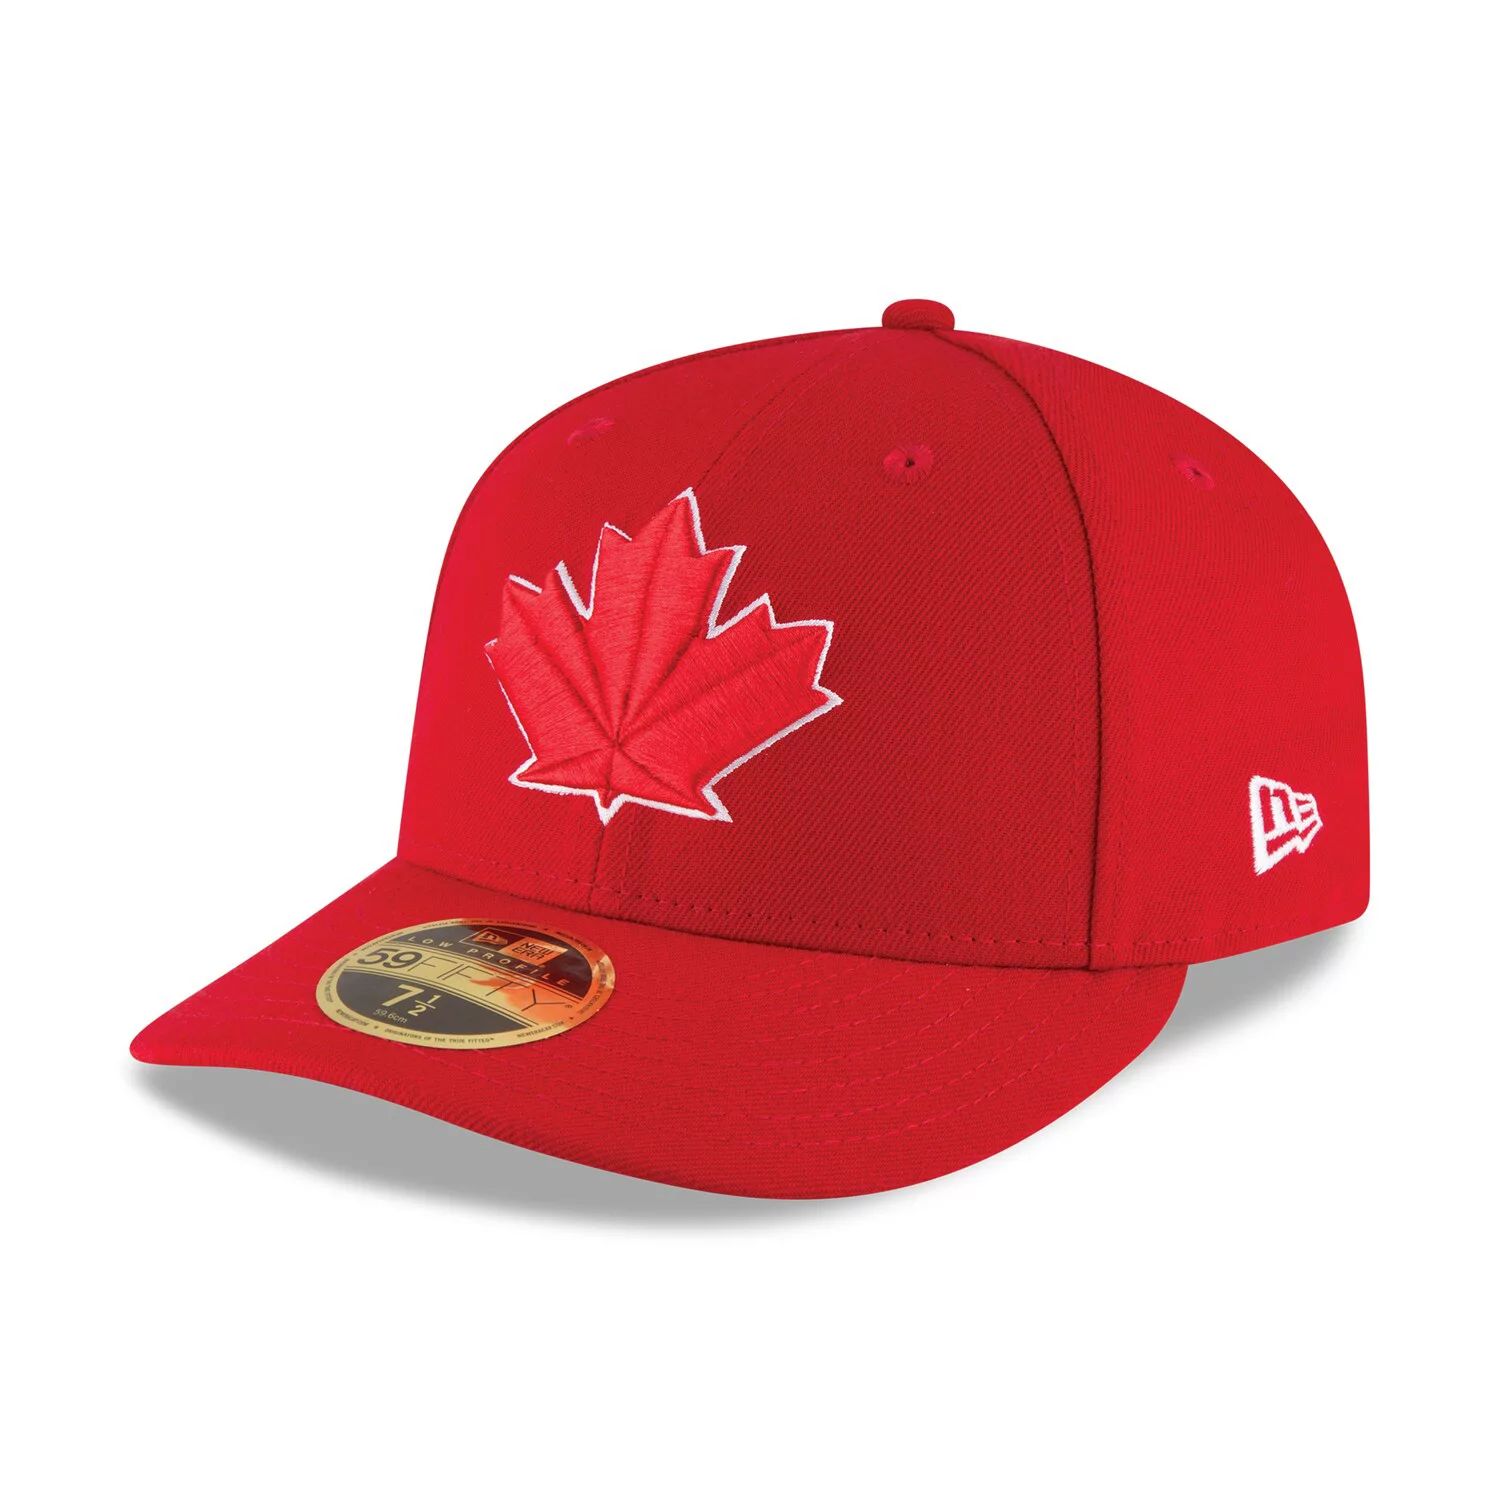 Мужская бейсболка New Era Scarlet Toronto Blue Jays 2017, аутентичная коллекция для поля, низкопрофильная 59FIFTY, приталенная шляпа цена и фото